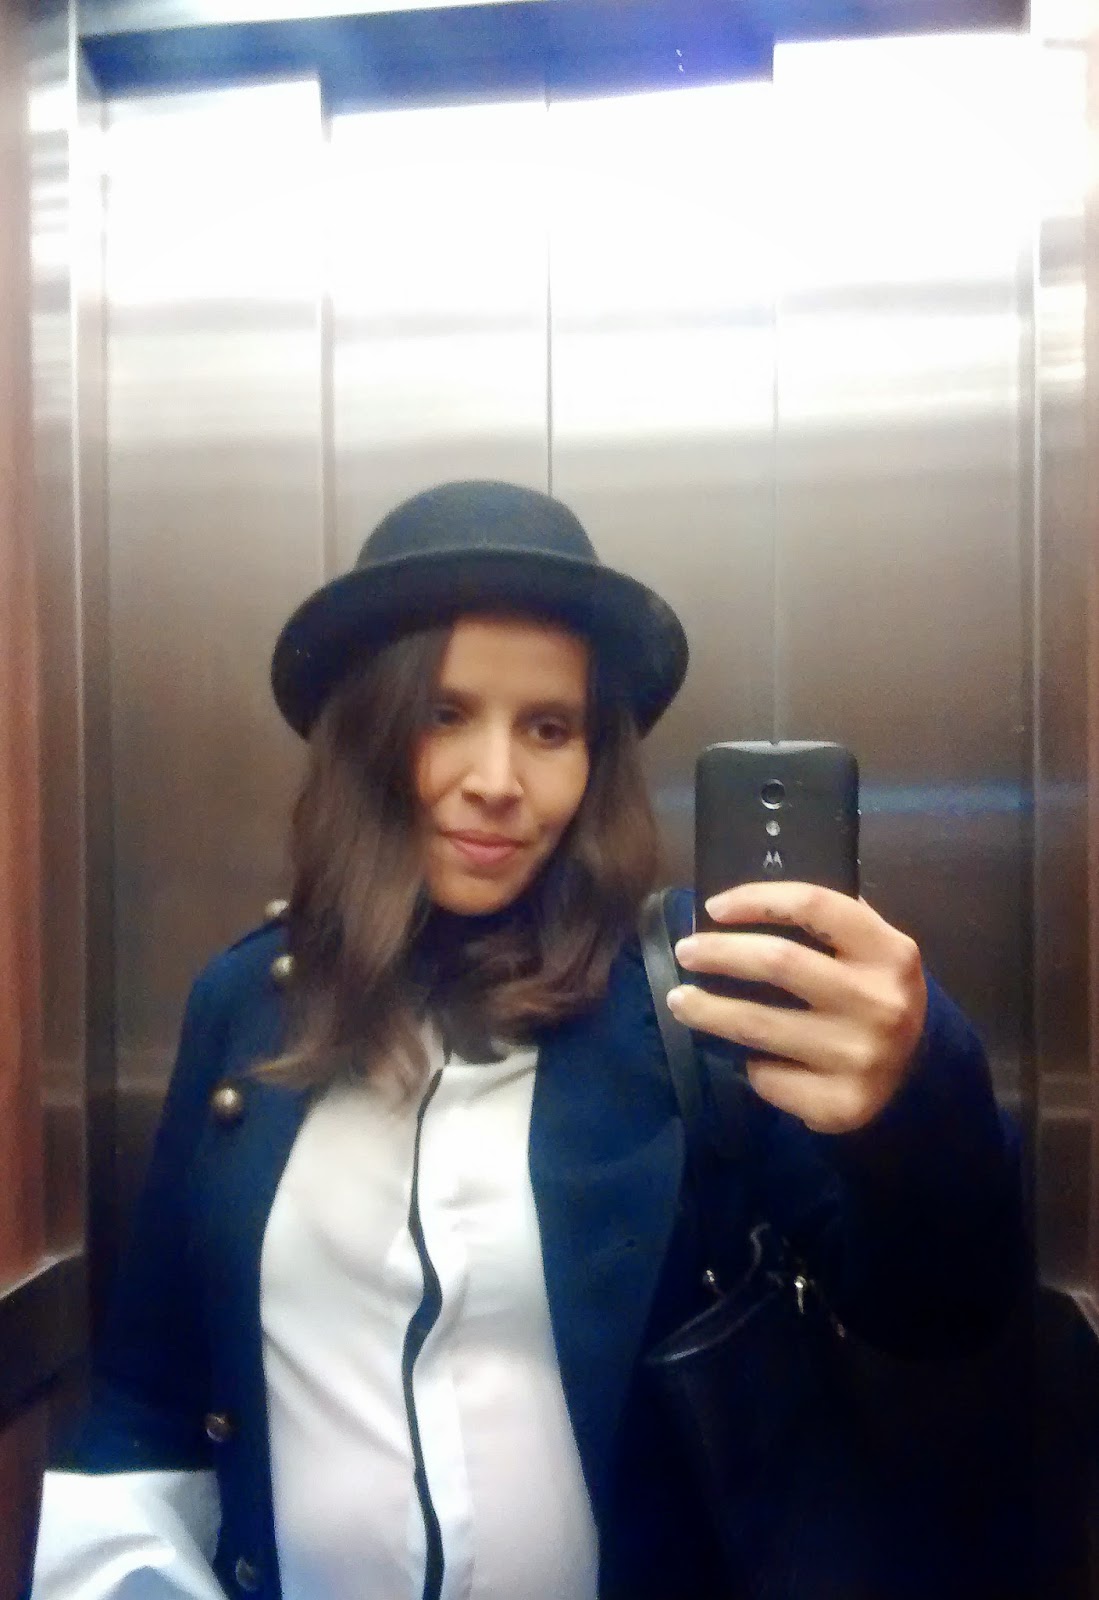 Elevator selfie 